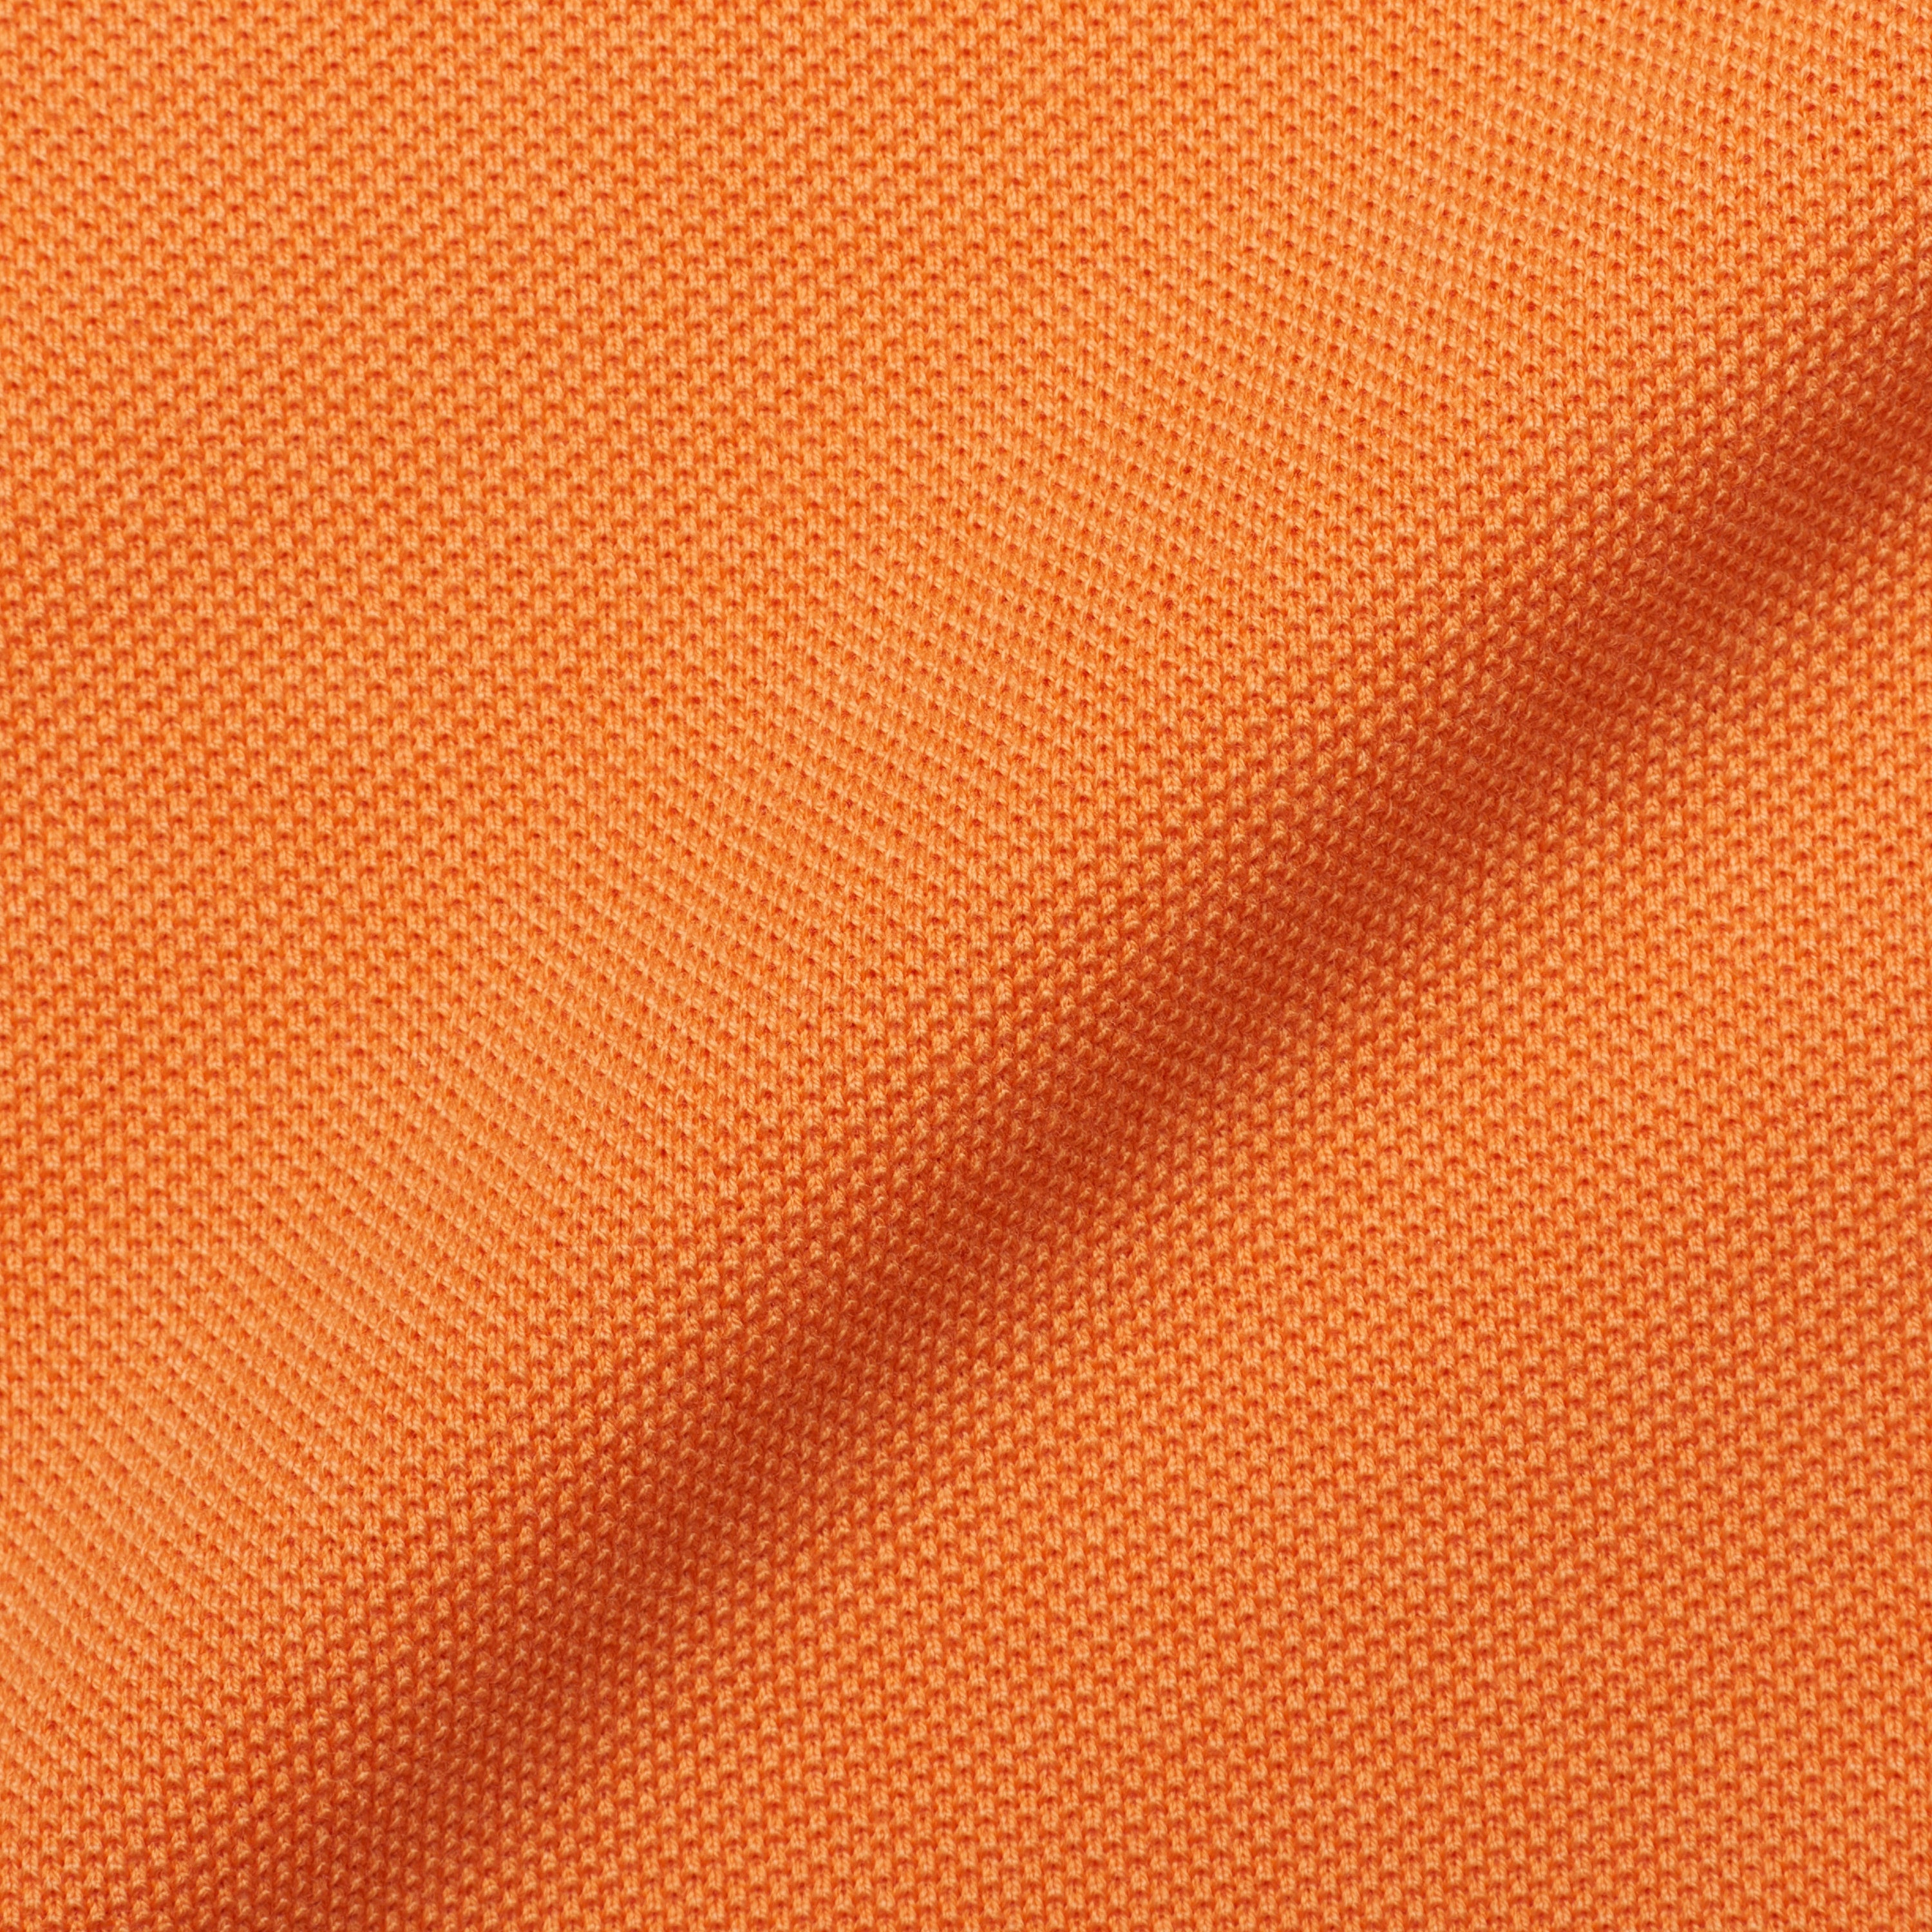 FEDELI "Jack" Orange Cotton Short Sleeve Pique Polo Shirt EU 48 NEW US S FEDELI